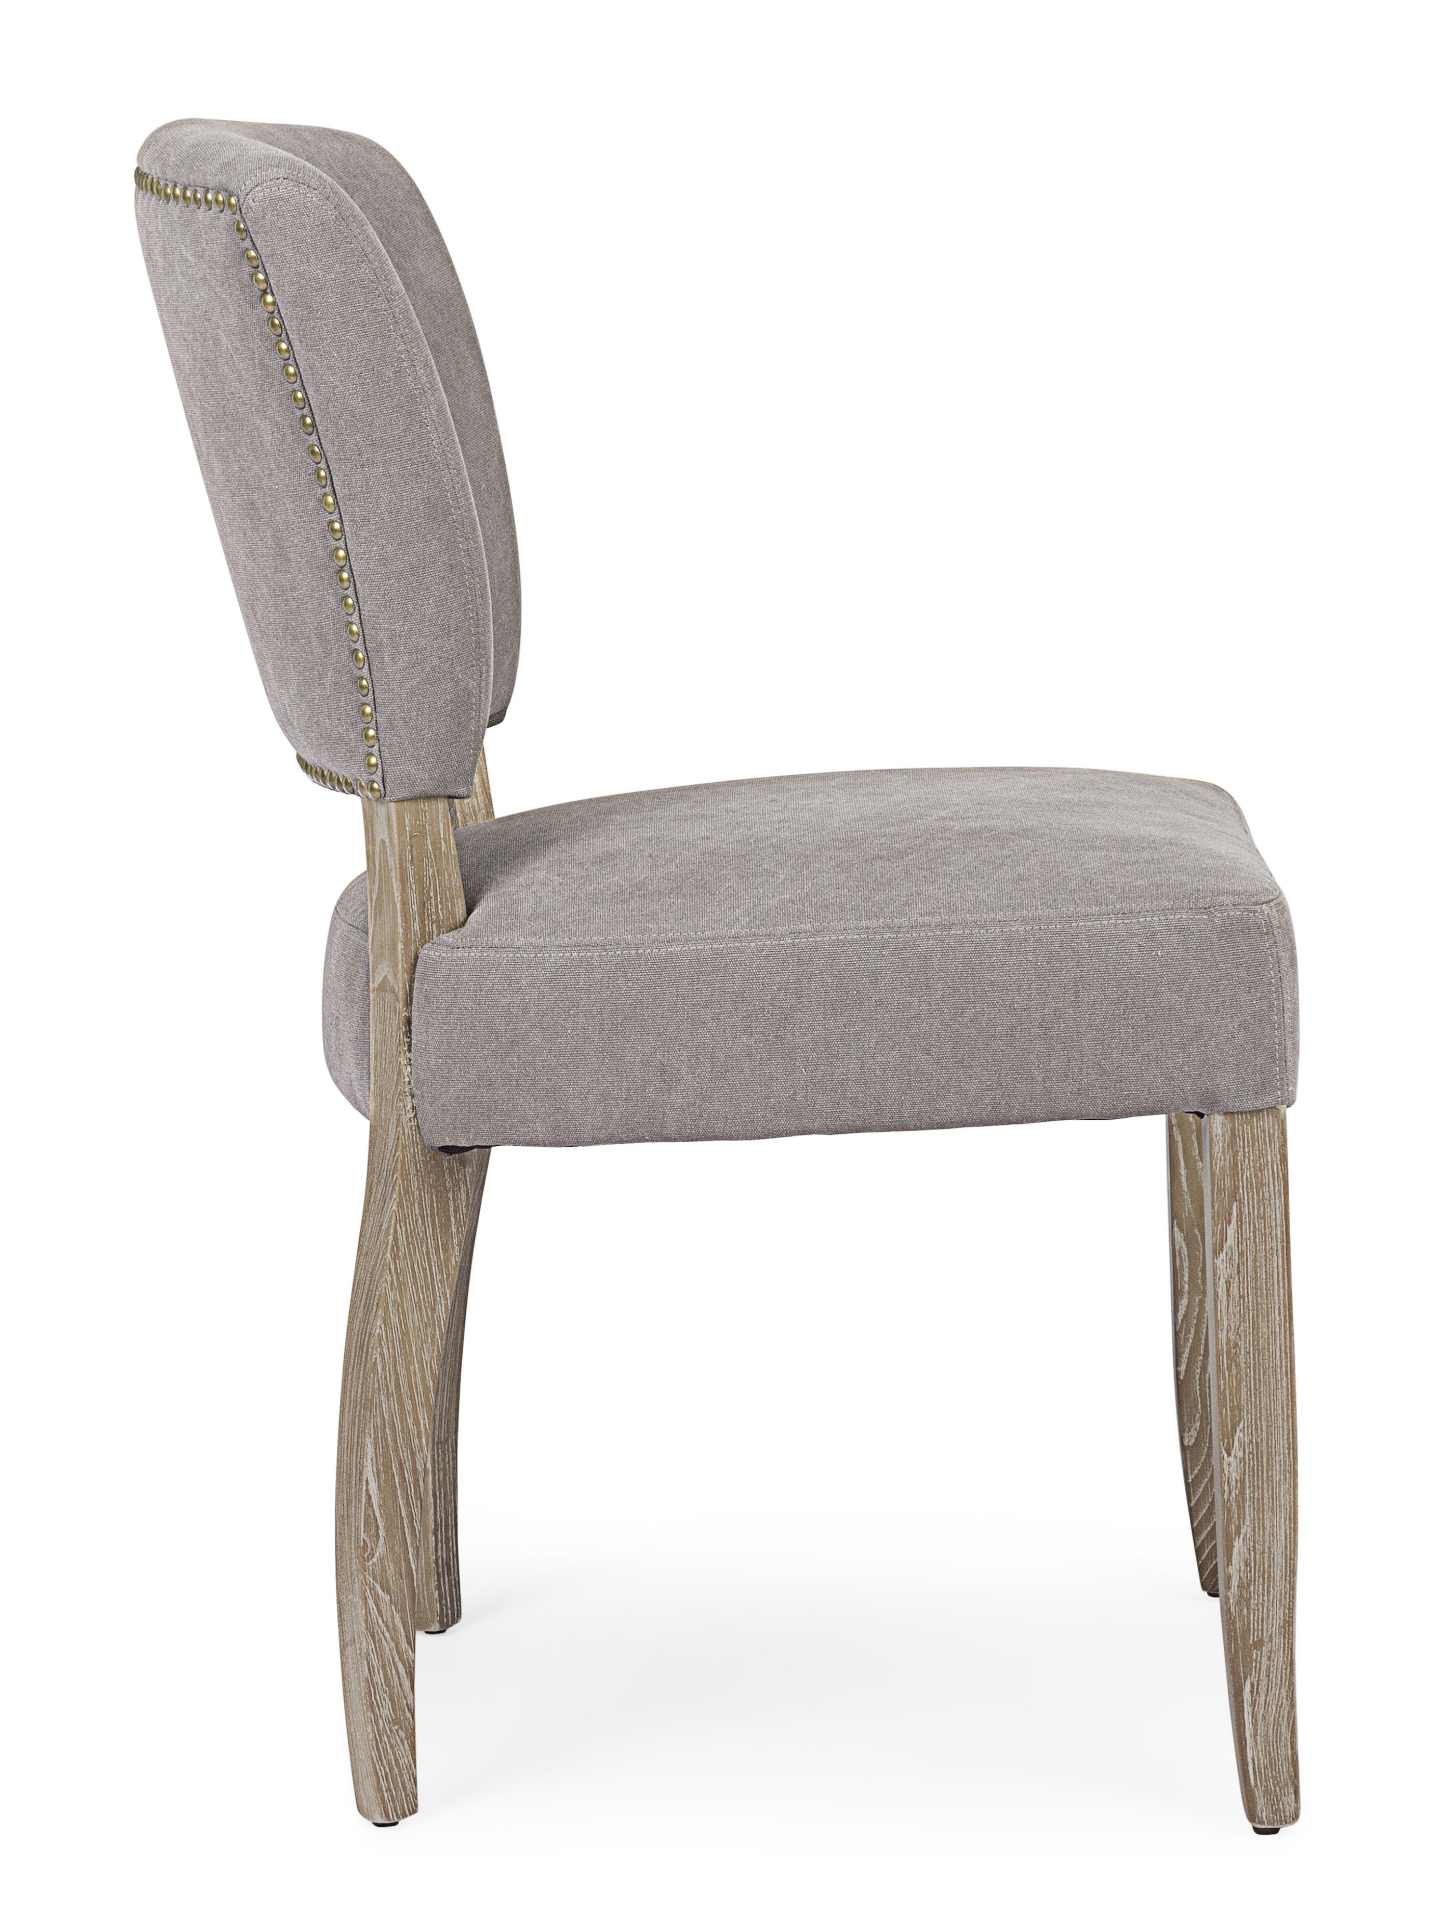 Der Esszimmerstuhl Maratriz überzeugt mit seinem klassischem Design. Gefertigt wurde der Stuhl aus Eschenholz, welches einen natürlichen Farbton besitzt. Die Sitz- und Rückenfläche besteht aus einem Mix aus Polyester und Baumwolle, welche einen grauen Far